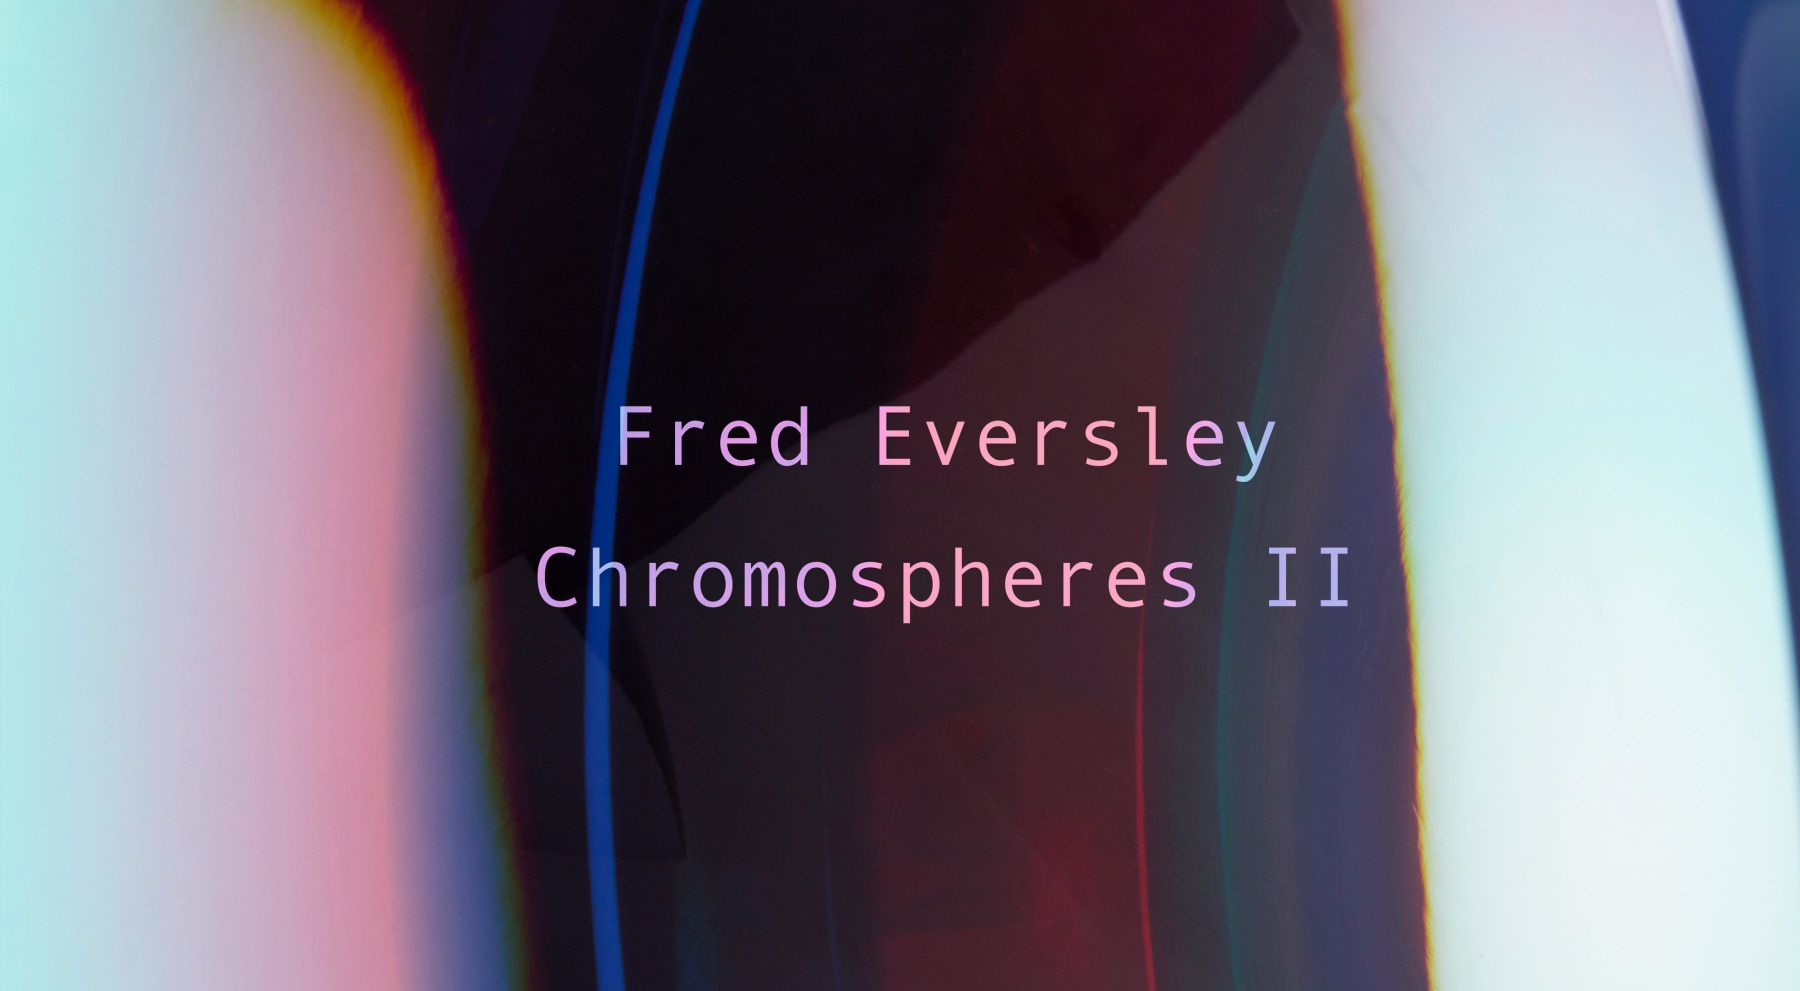 Fred Eversley - Chromospheres II - Viewing Room - David Kordansky Gallery